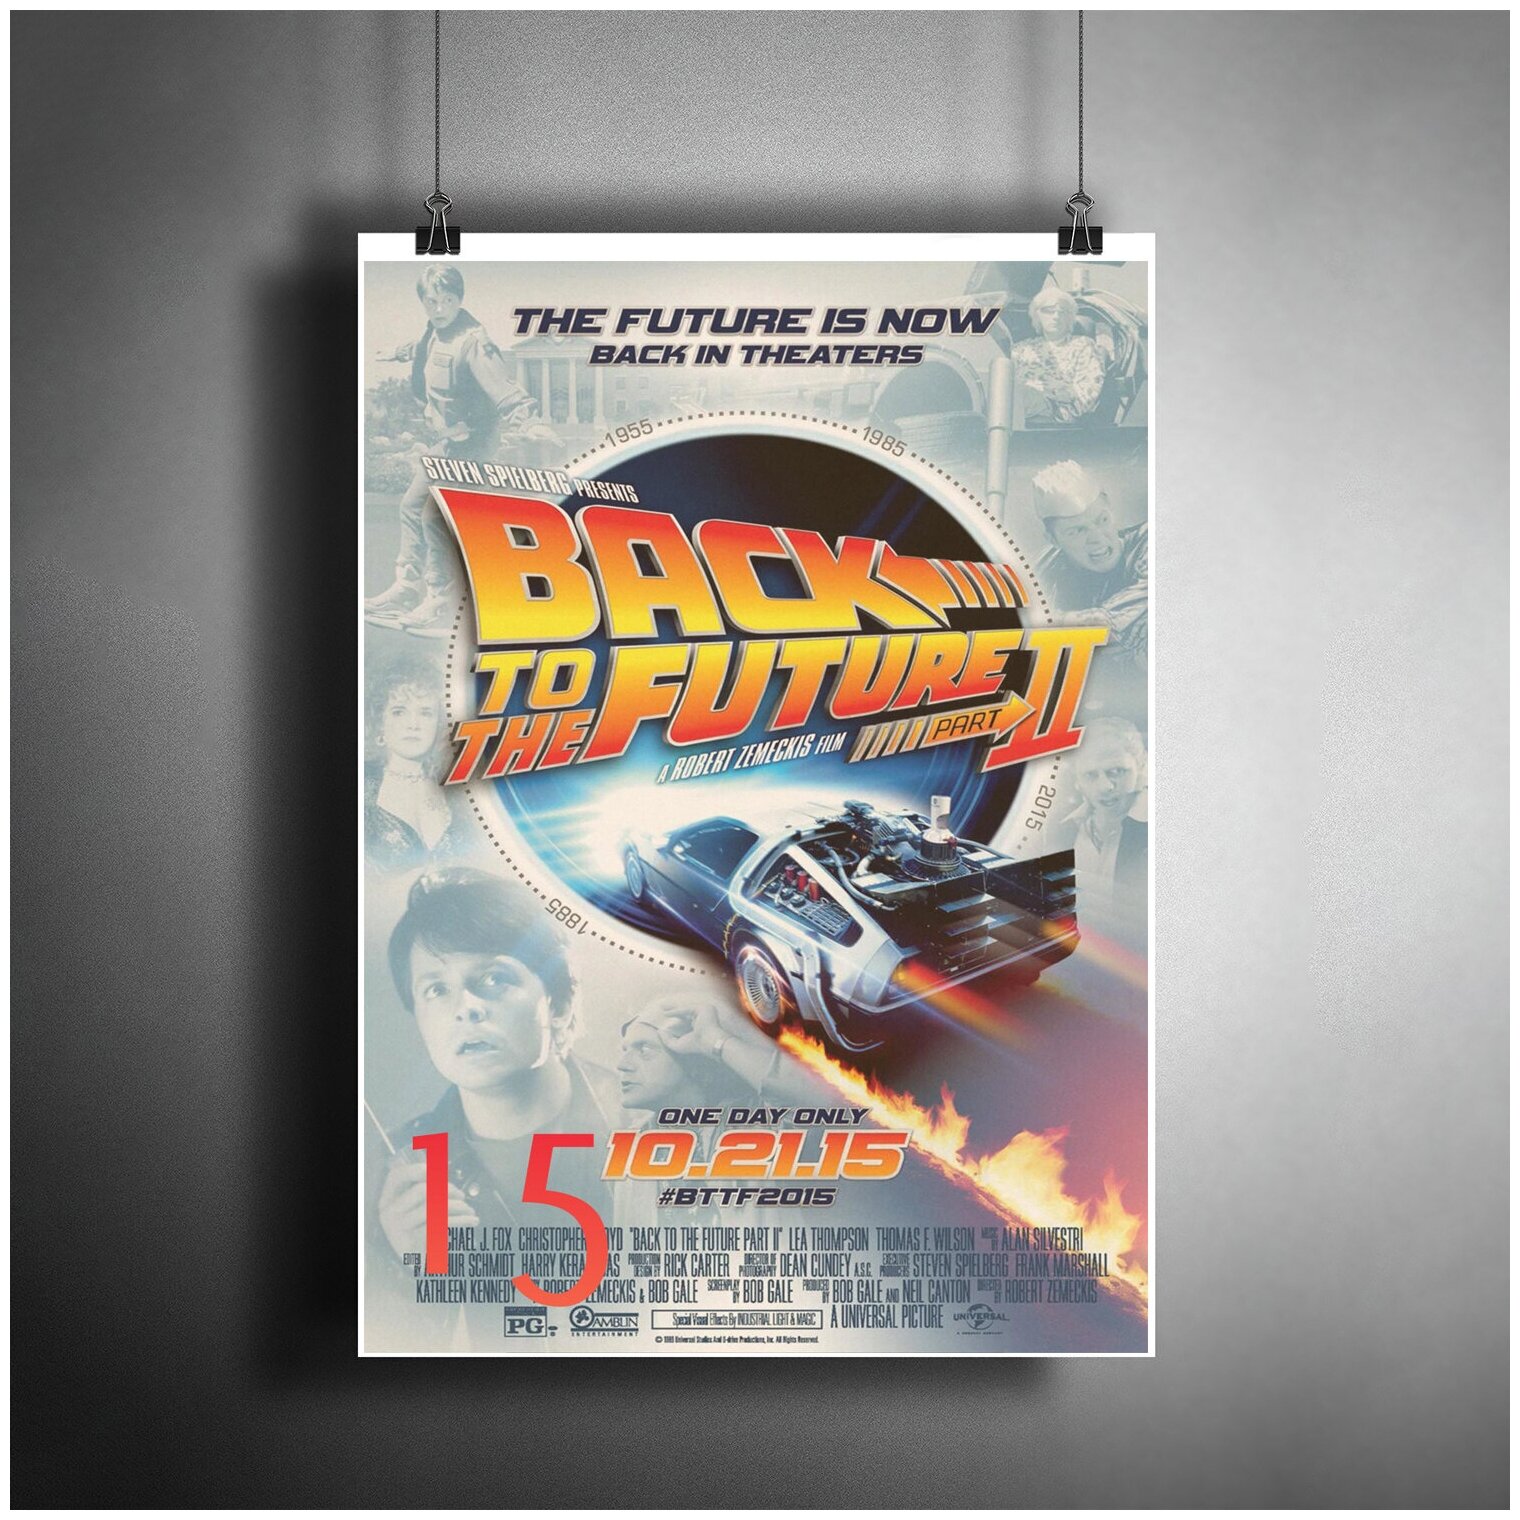 Постер плакат для интерьера "Фильм: Назад в будущее 2. Back to the Future Part II" / Декор дома, гостинной. A3 (297 x 420 мм)